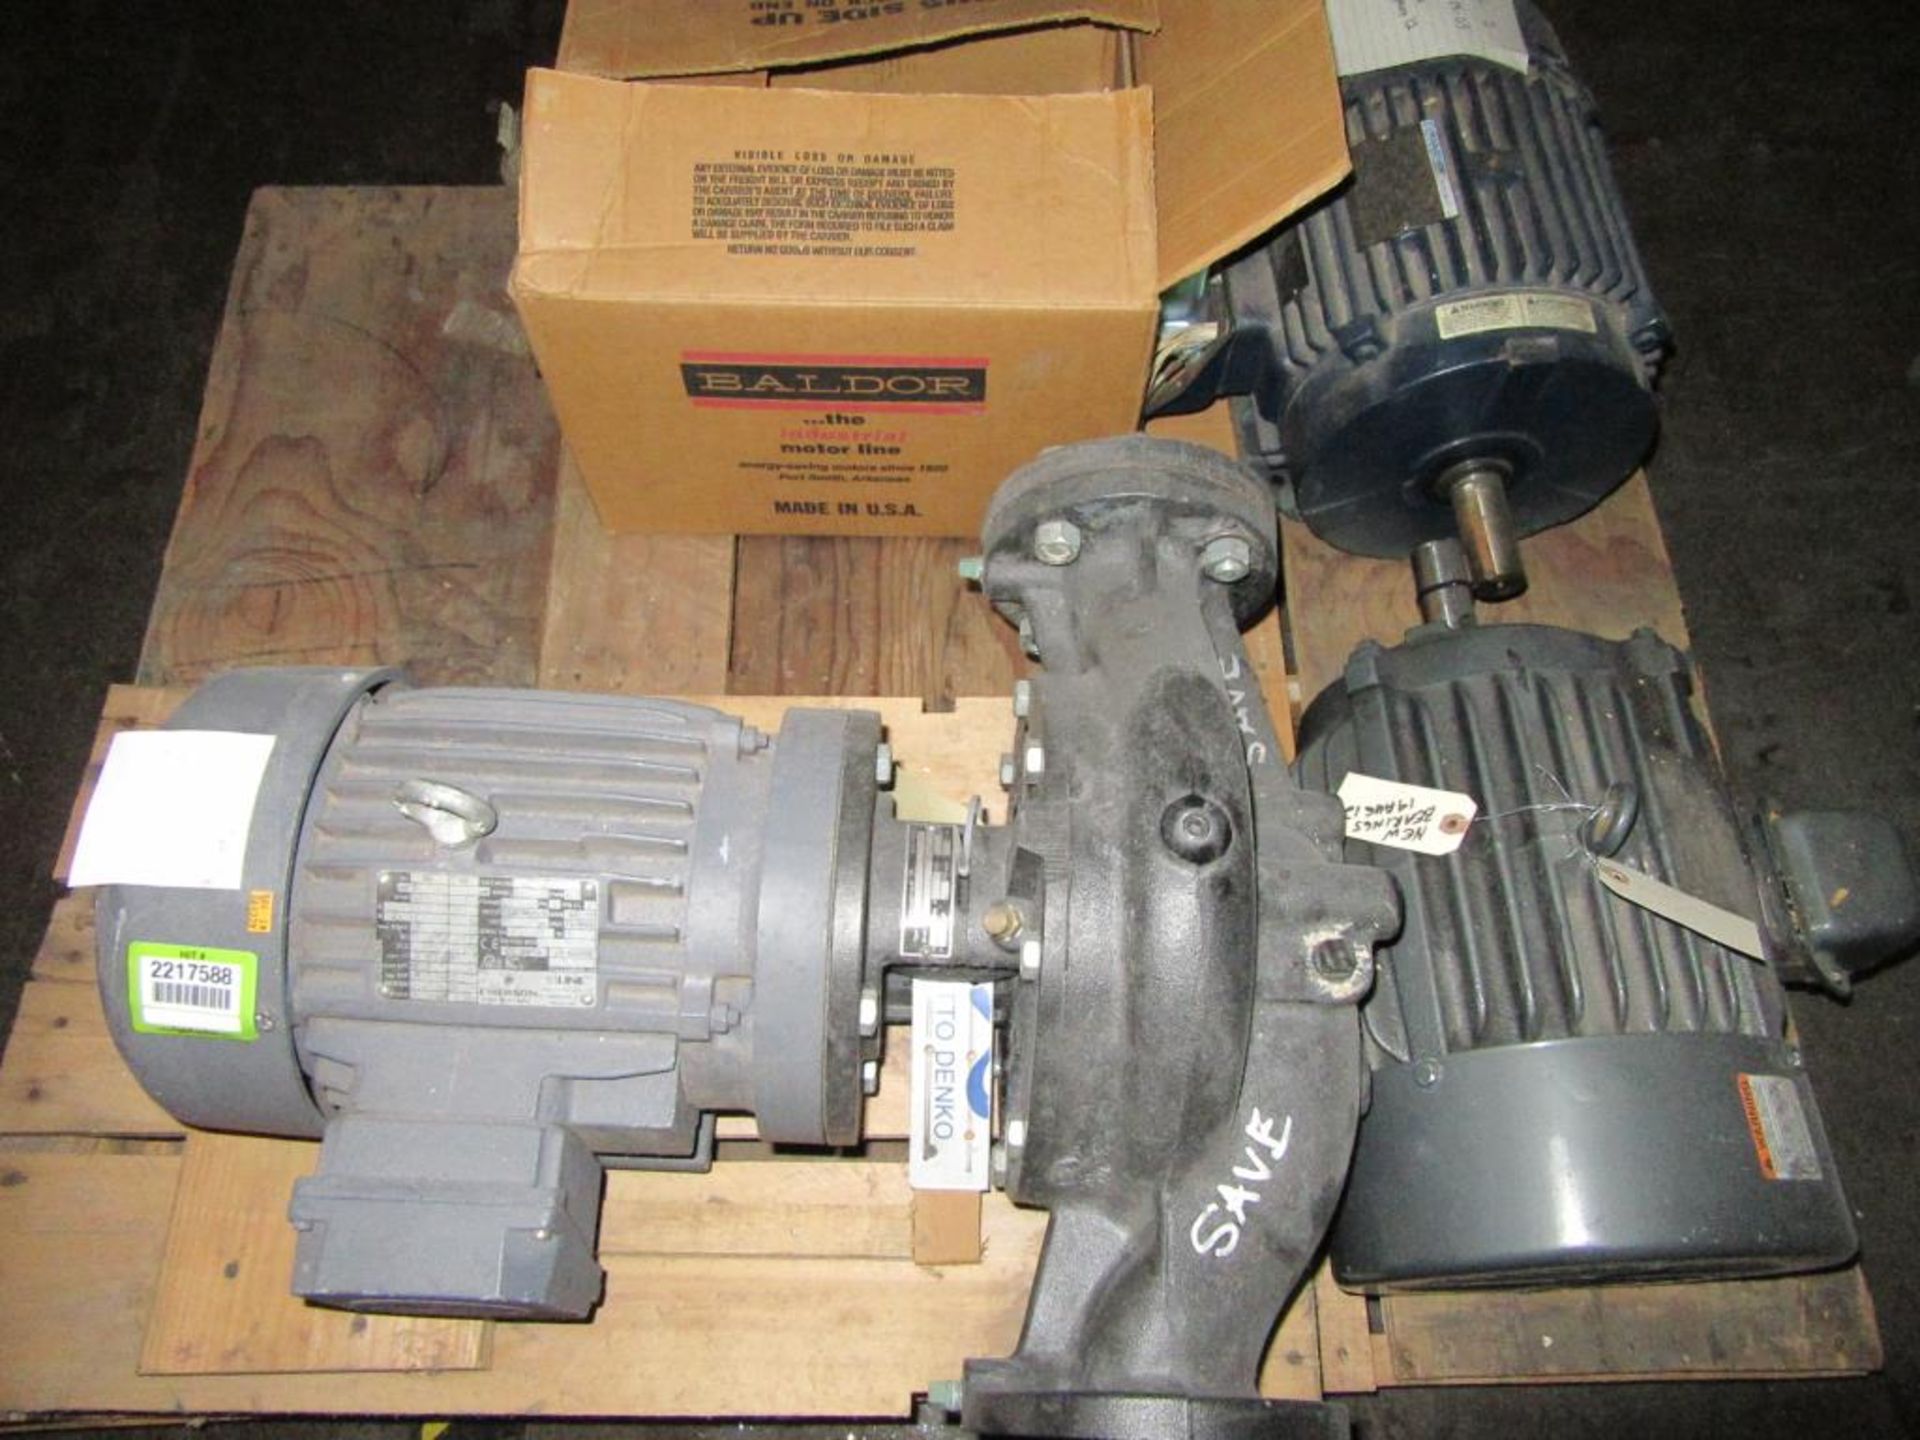 Motors & Pump; Lot: (4) Assorted Motors & (1) Pump on Pallet. HIT# 2217588. Loc: Maintenance Cage